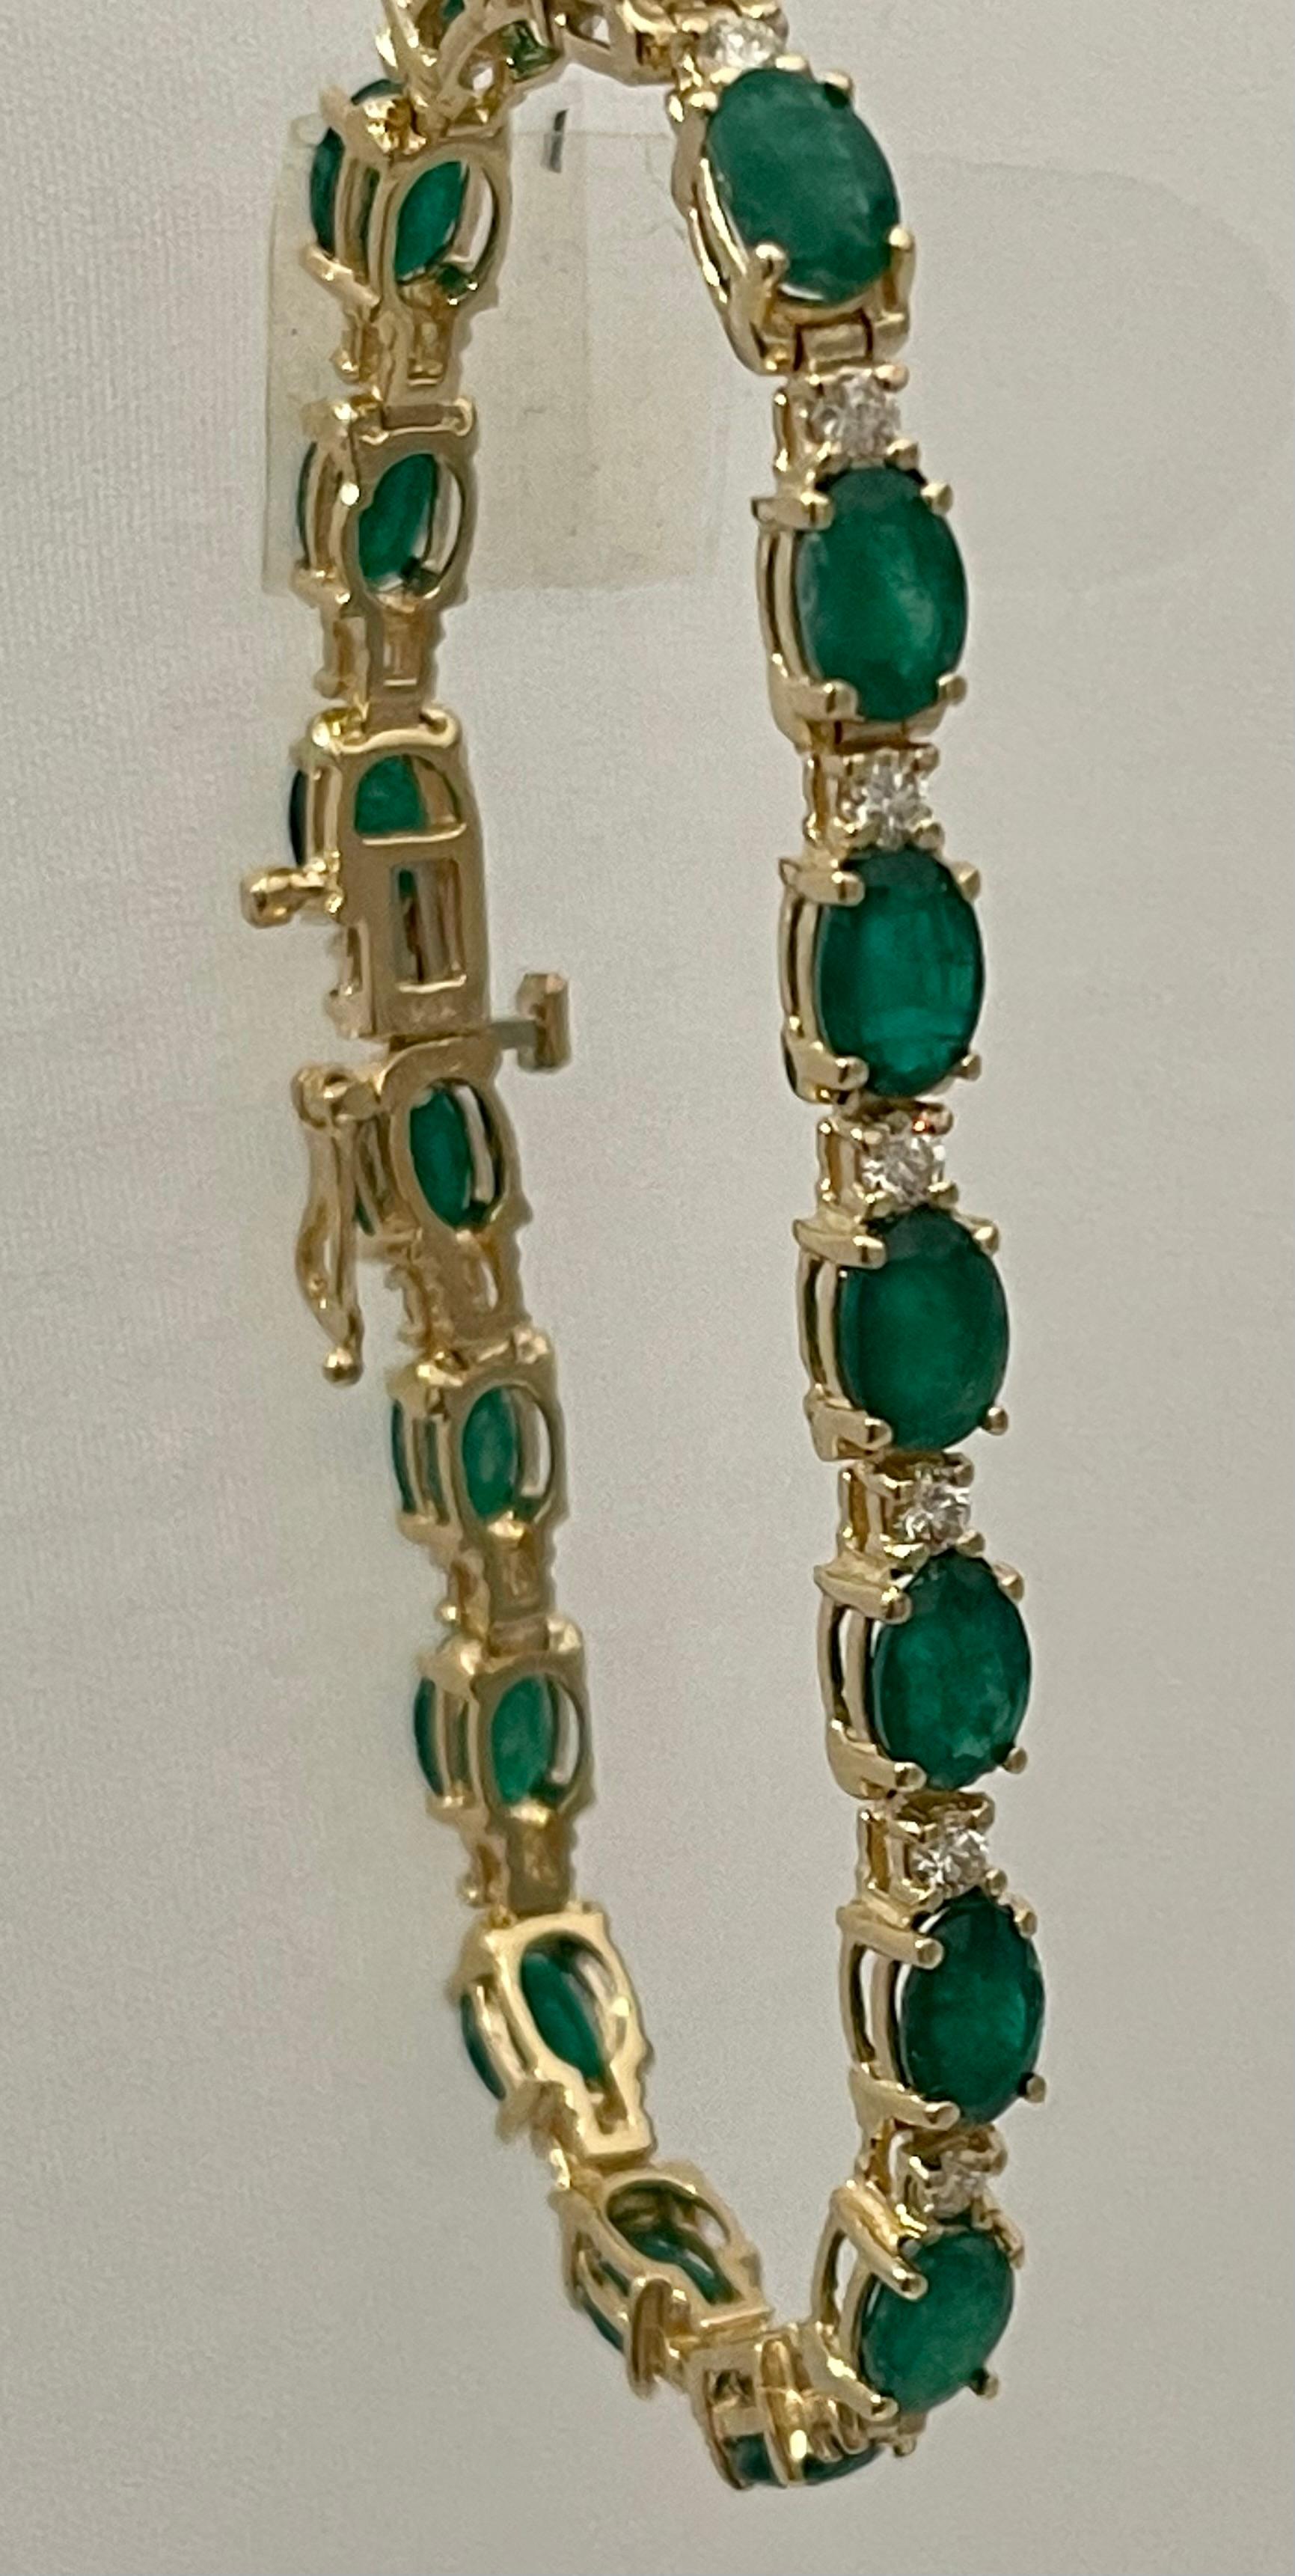 16 Carat Natural Emerald & Diamond Cocktail Tennis Bracelet 14 Karat Yellow Gold 2